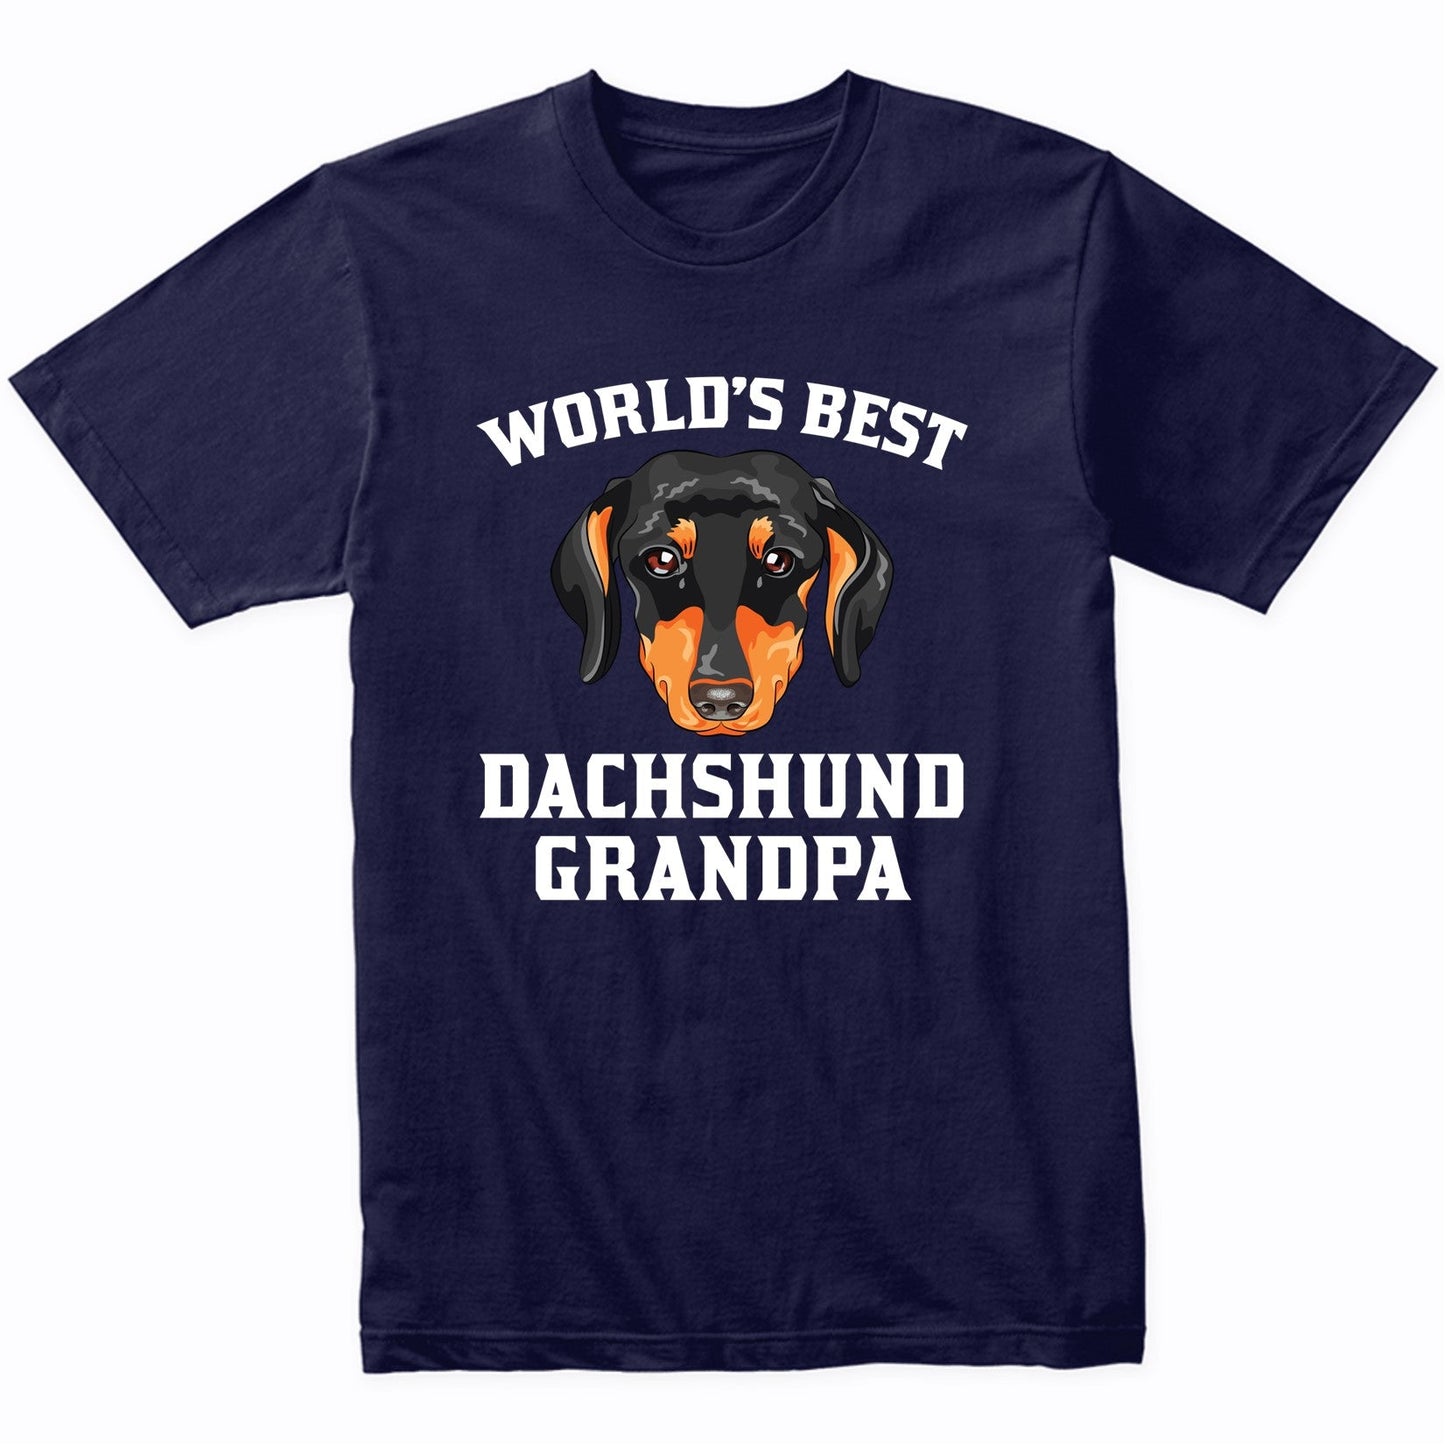 World's Best Dachshund Grandpa Dog Graphic T-Shirt